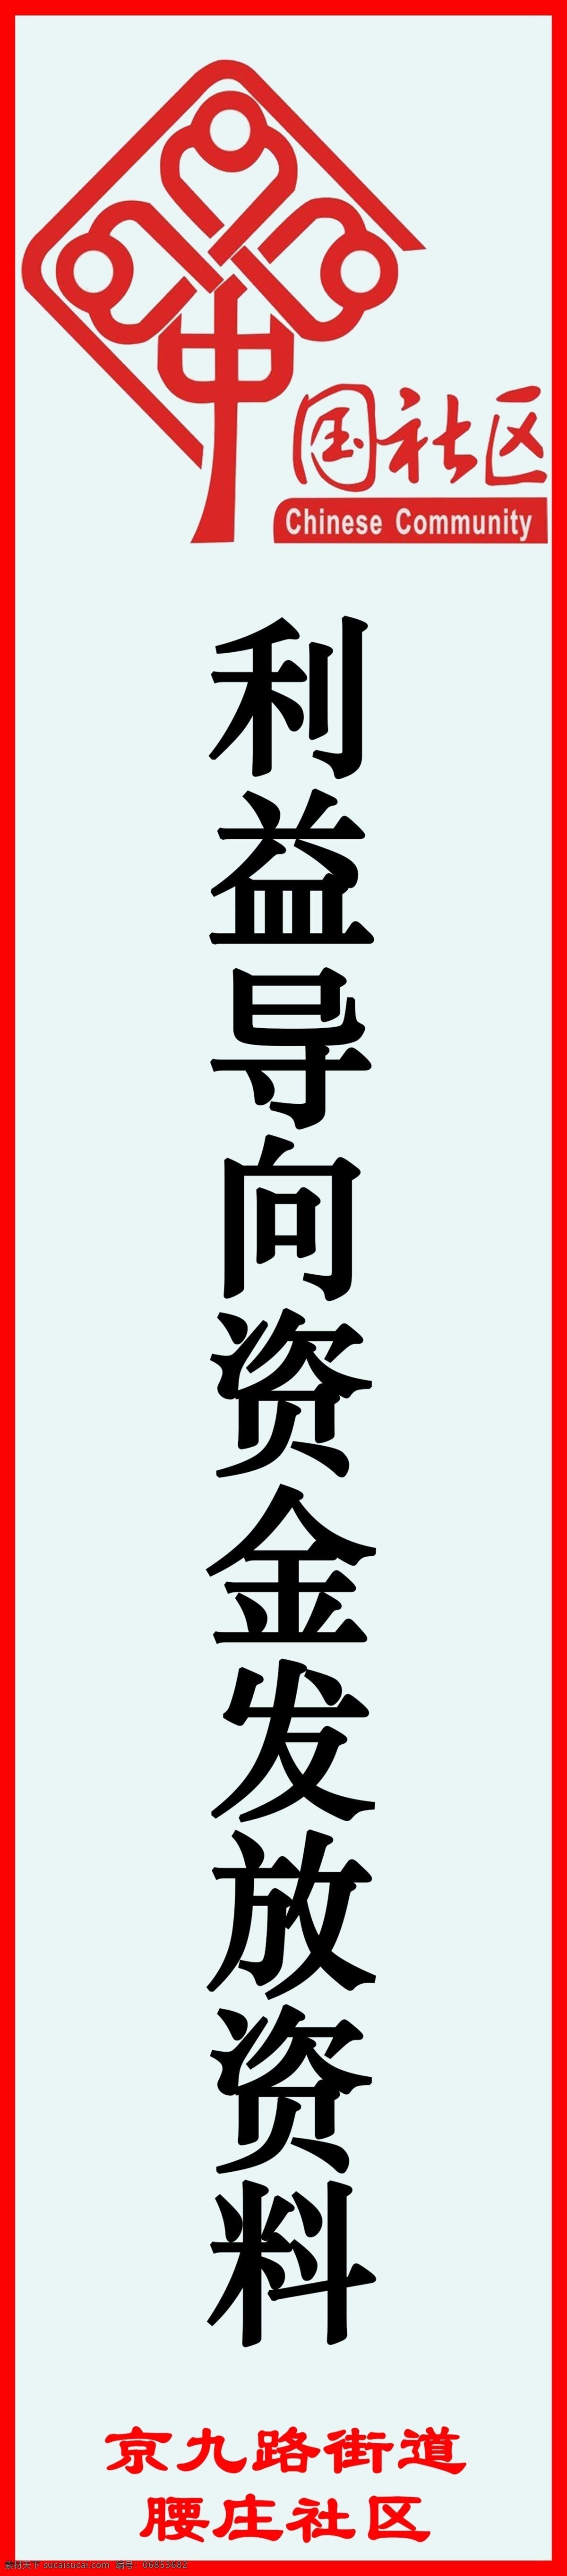 中国社区素材 中国 社区 logo 文件 分类 分层